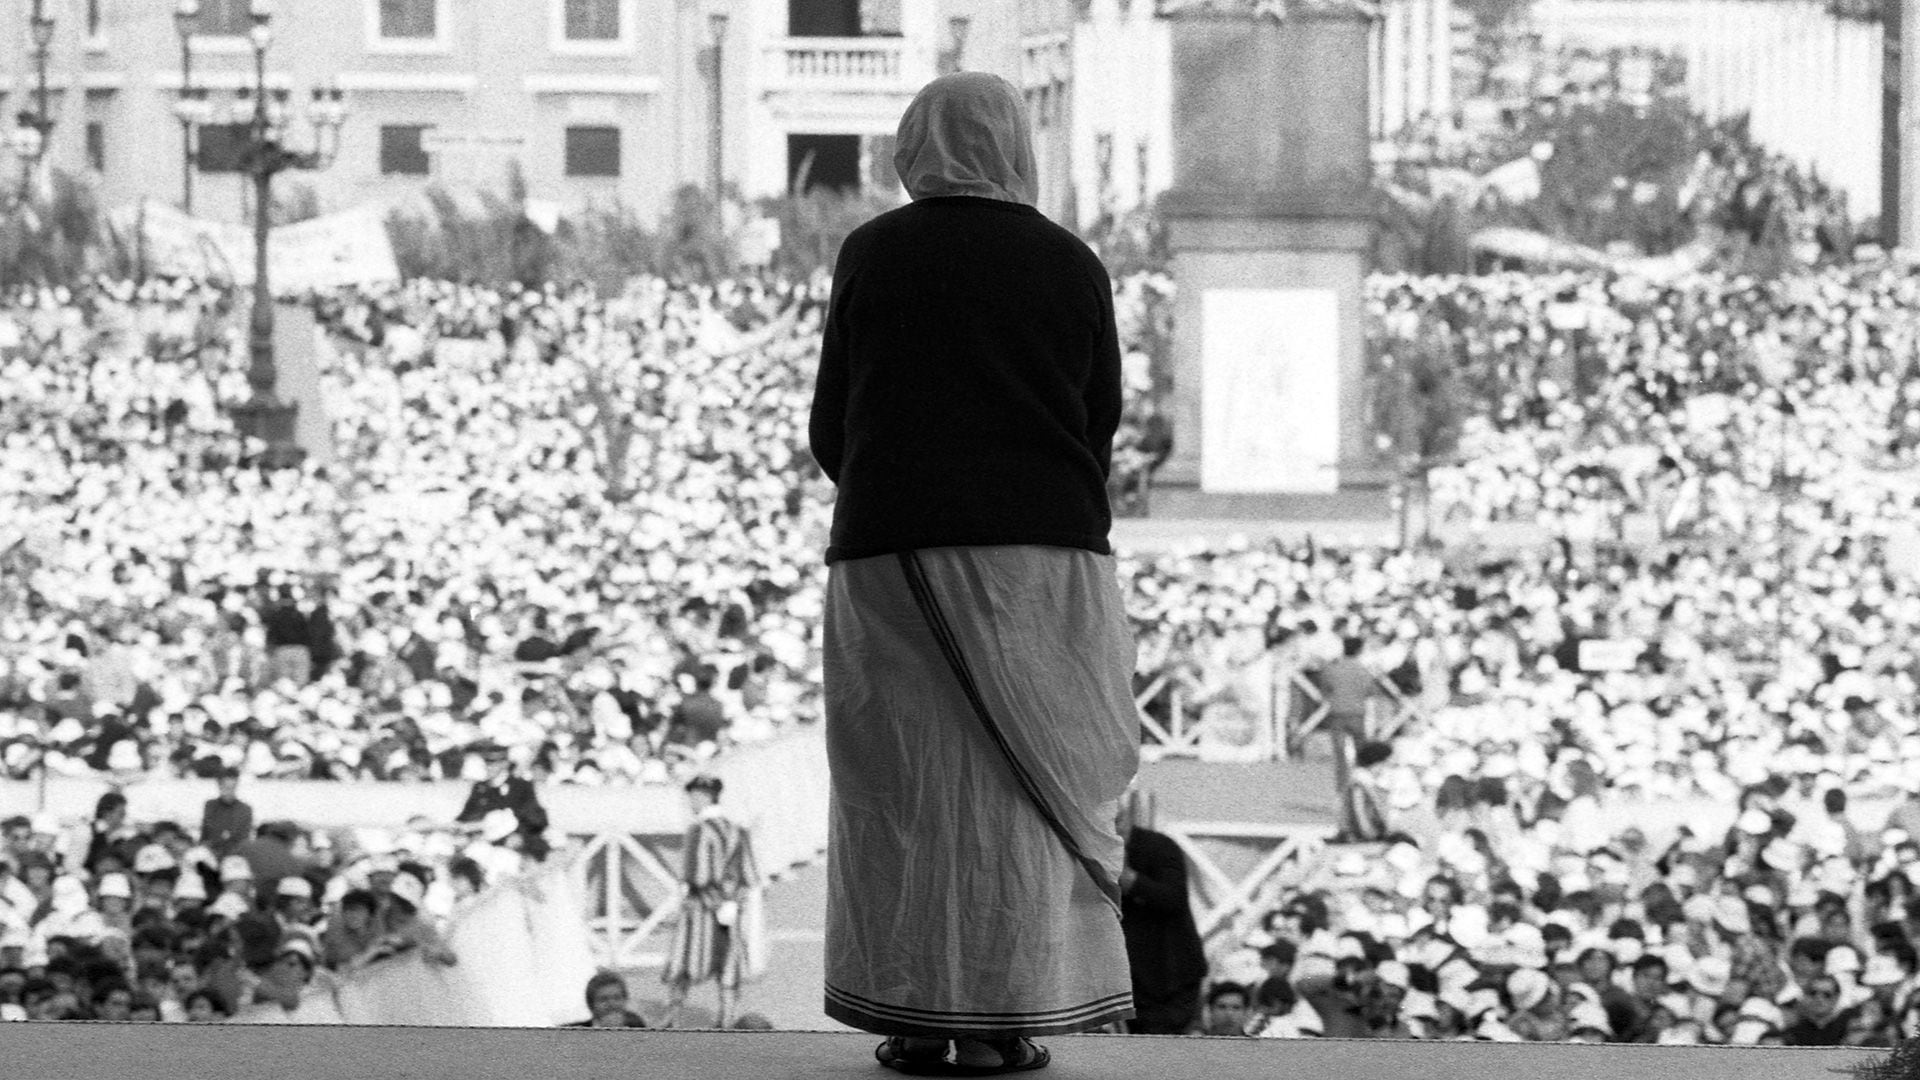 La Madre Teresa se convirtió en una celebridad mundial en los años setenta. En 1979 obtuvo el Premio Nobel de la Paz. Esta imagen es de una clebración en la plaza de San Pedro en el Vaticano que tuvo lugar en 1984 y a la que concurrieron más de 200.000 personas ( Edoardo Fornaciari/Getty Images)